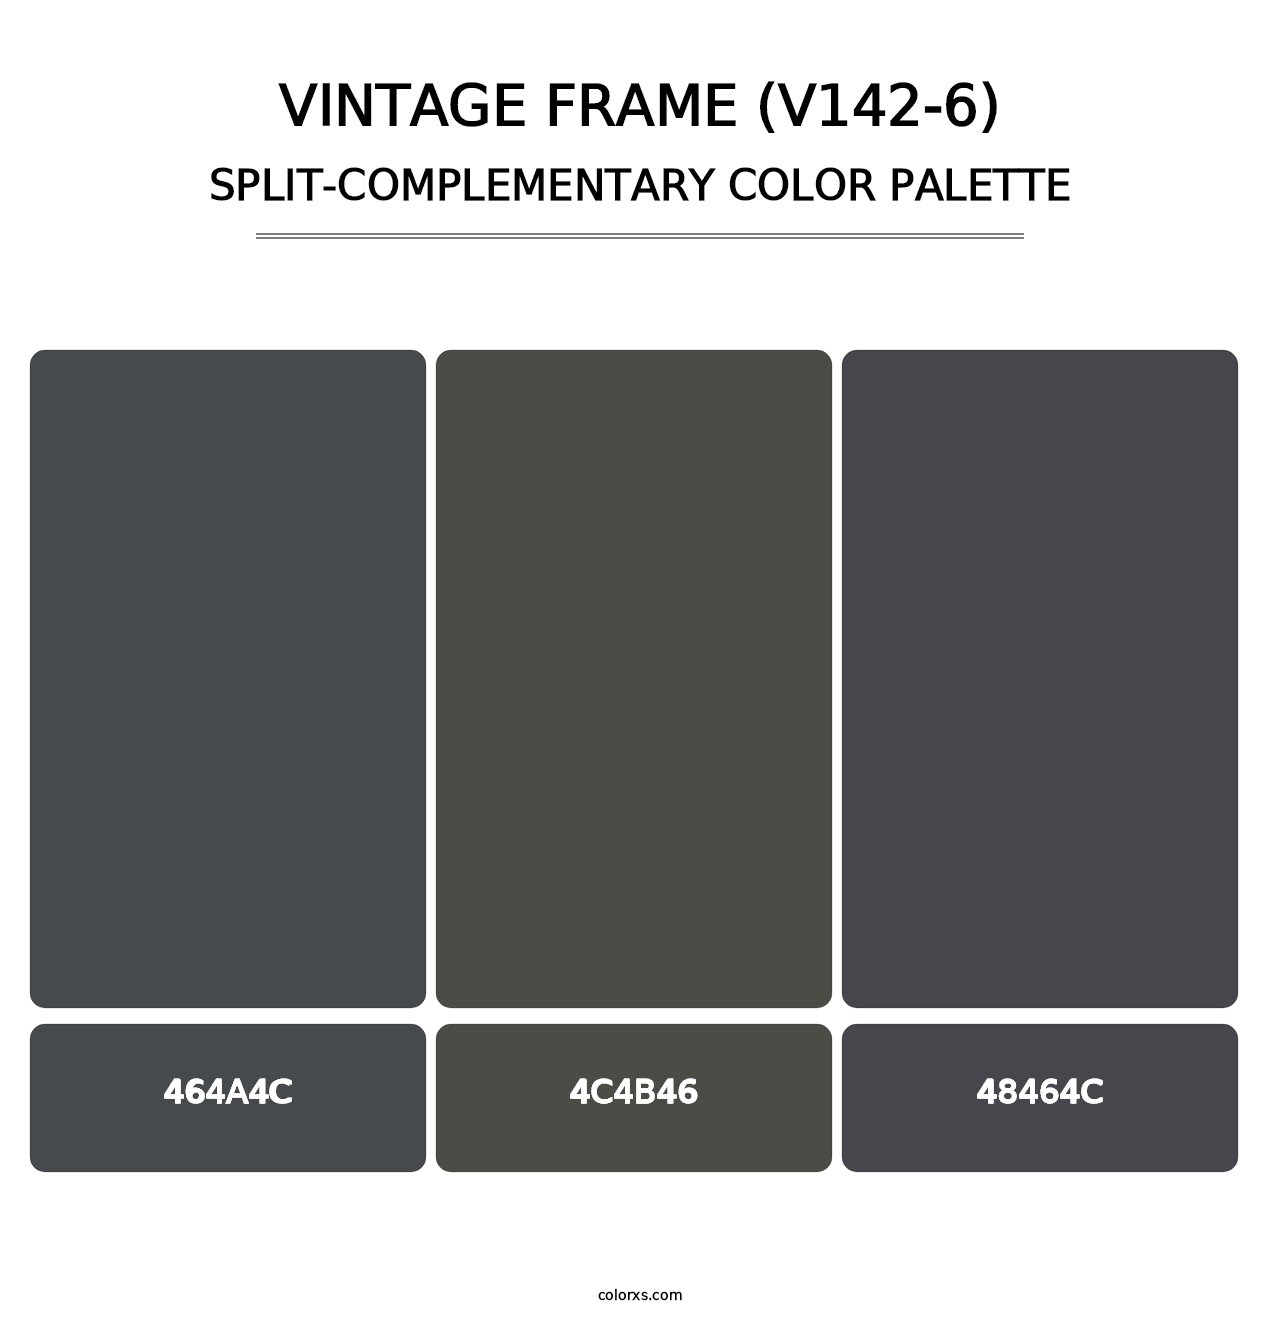 Vintage Frame (V142-6) - Split-Complementary Color Palette